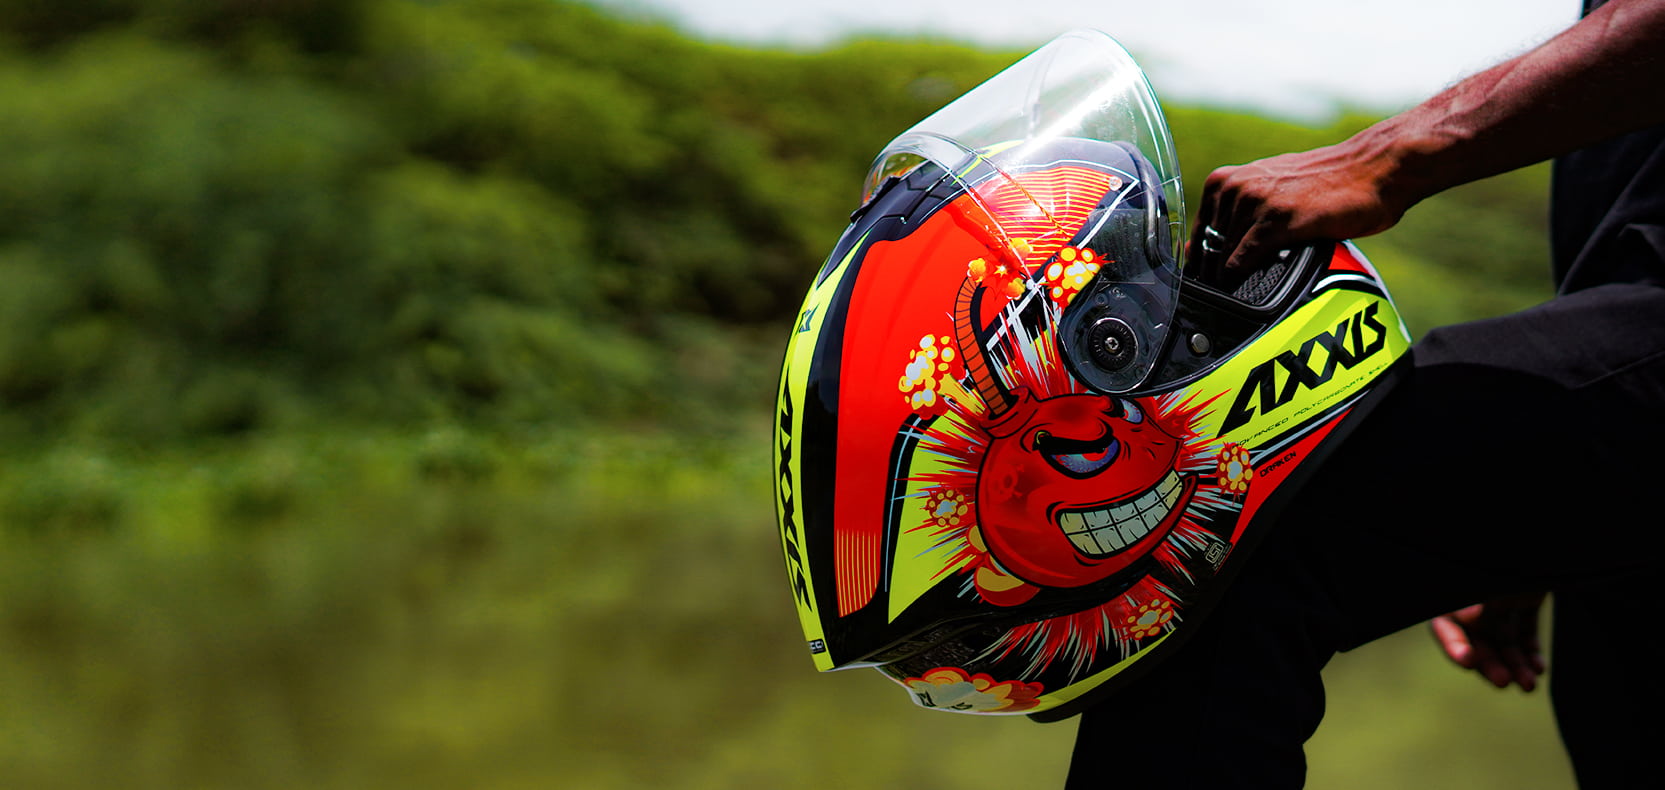 Axxis Draken Boms Motorcycle Helmet